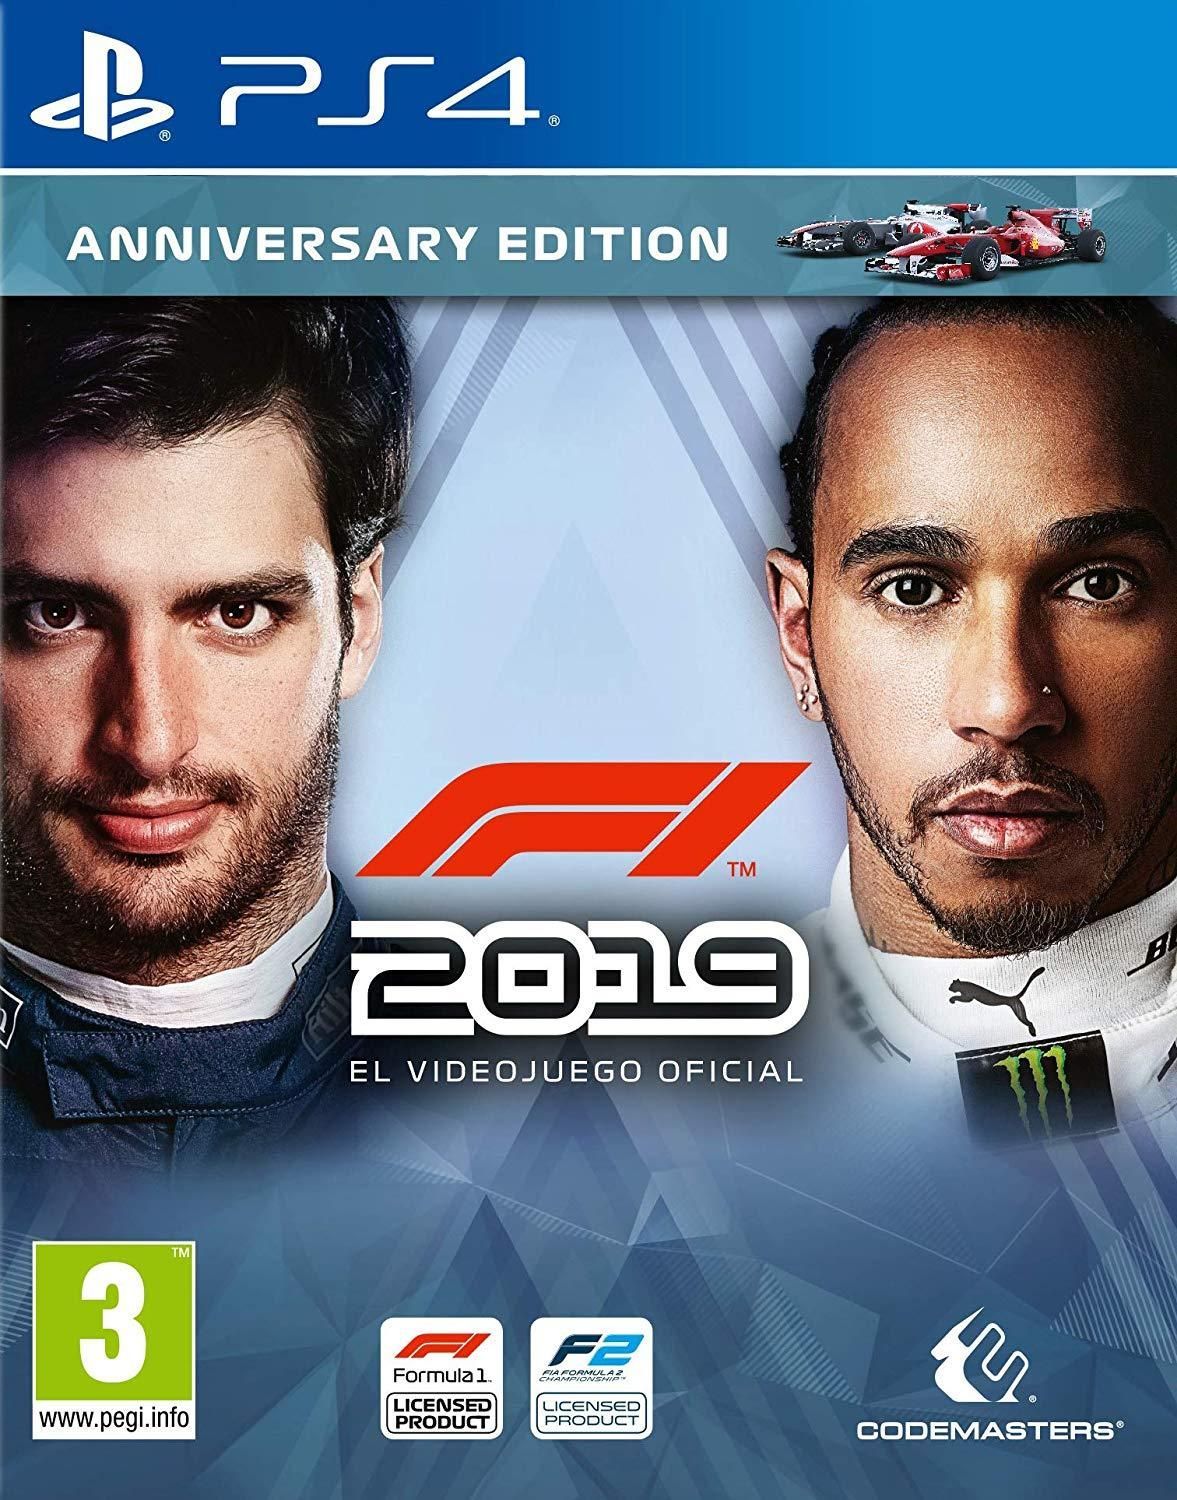 F1 Videojuego (PS4, PC y Xbox One) Vandal